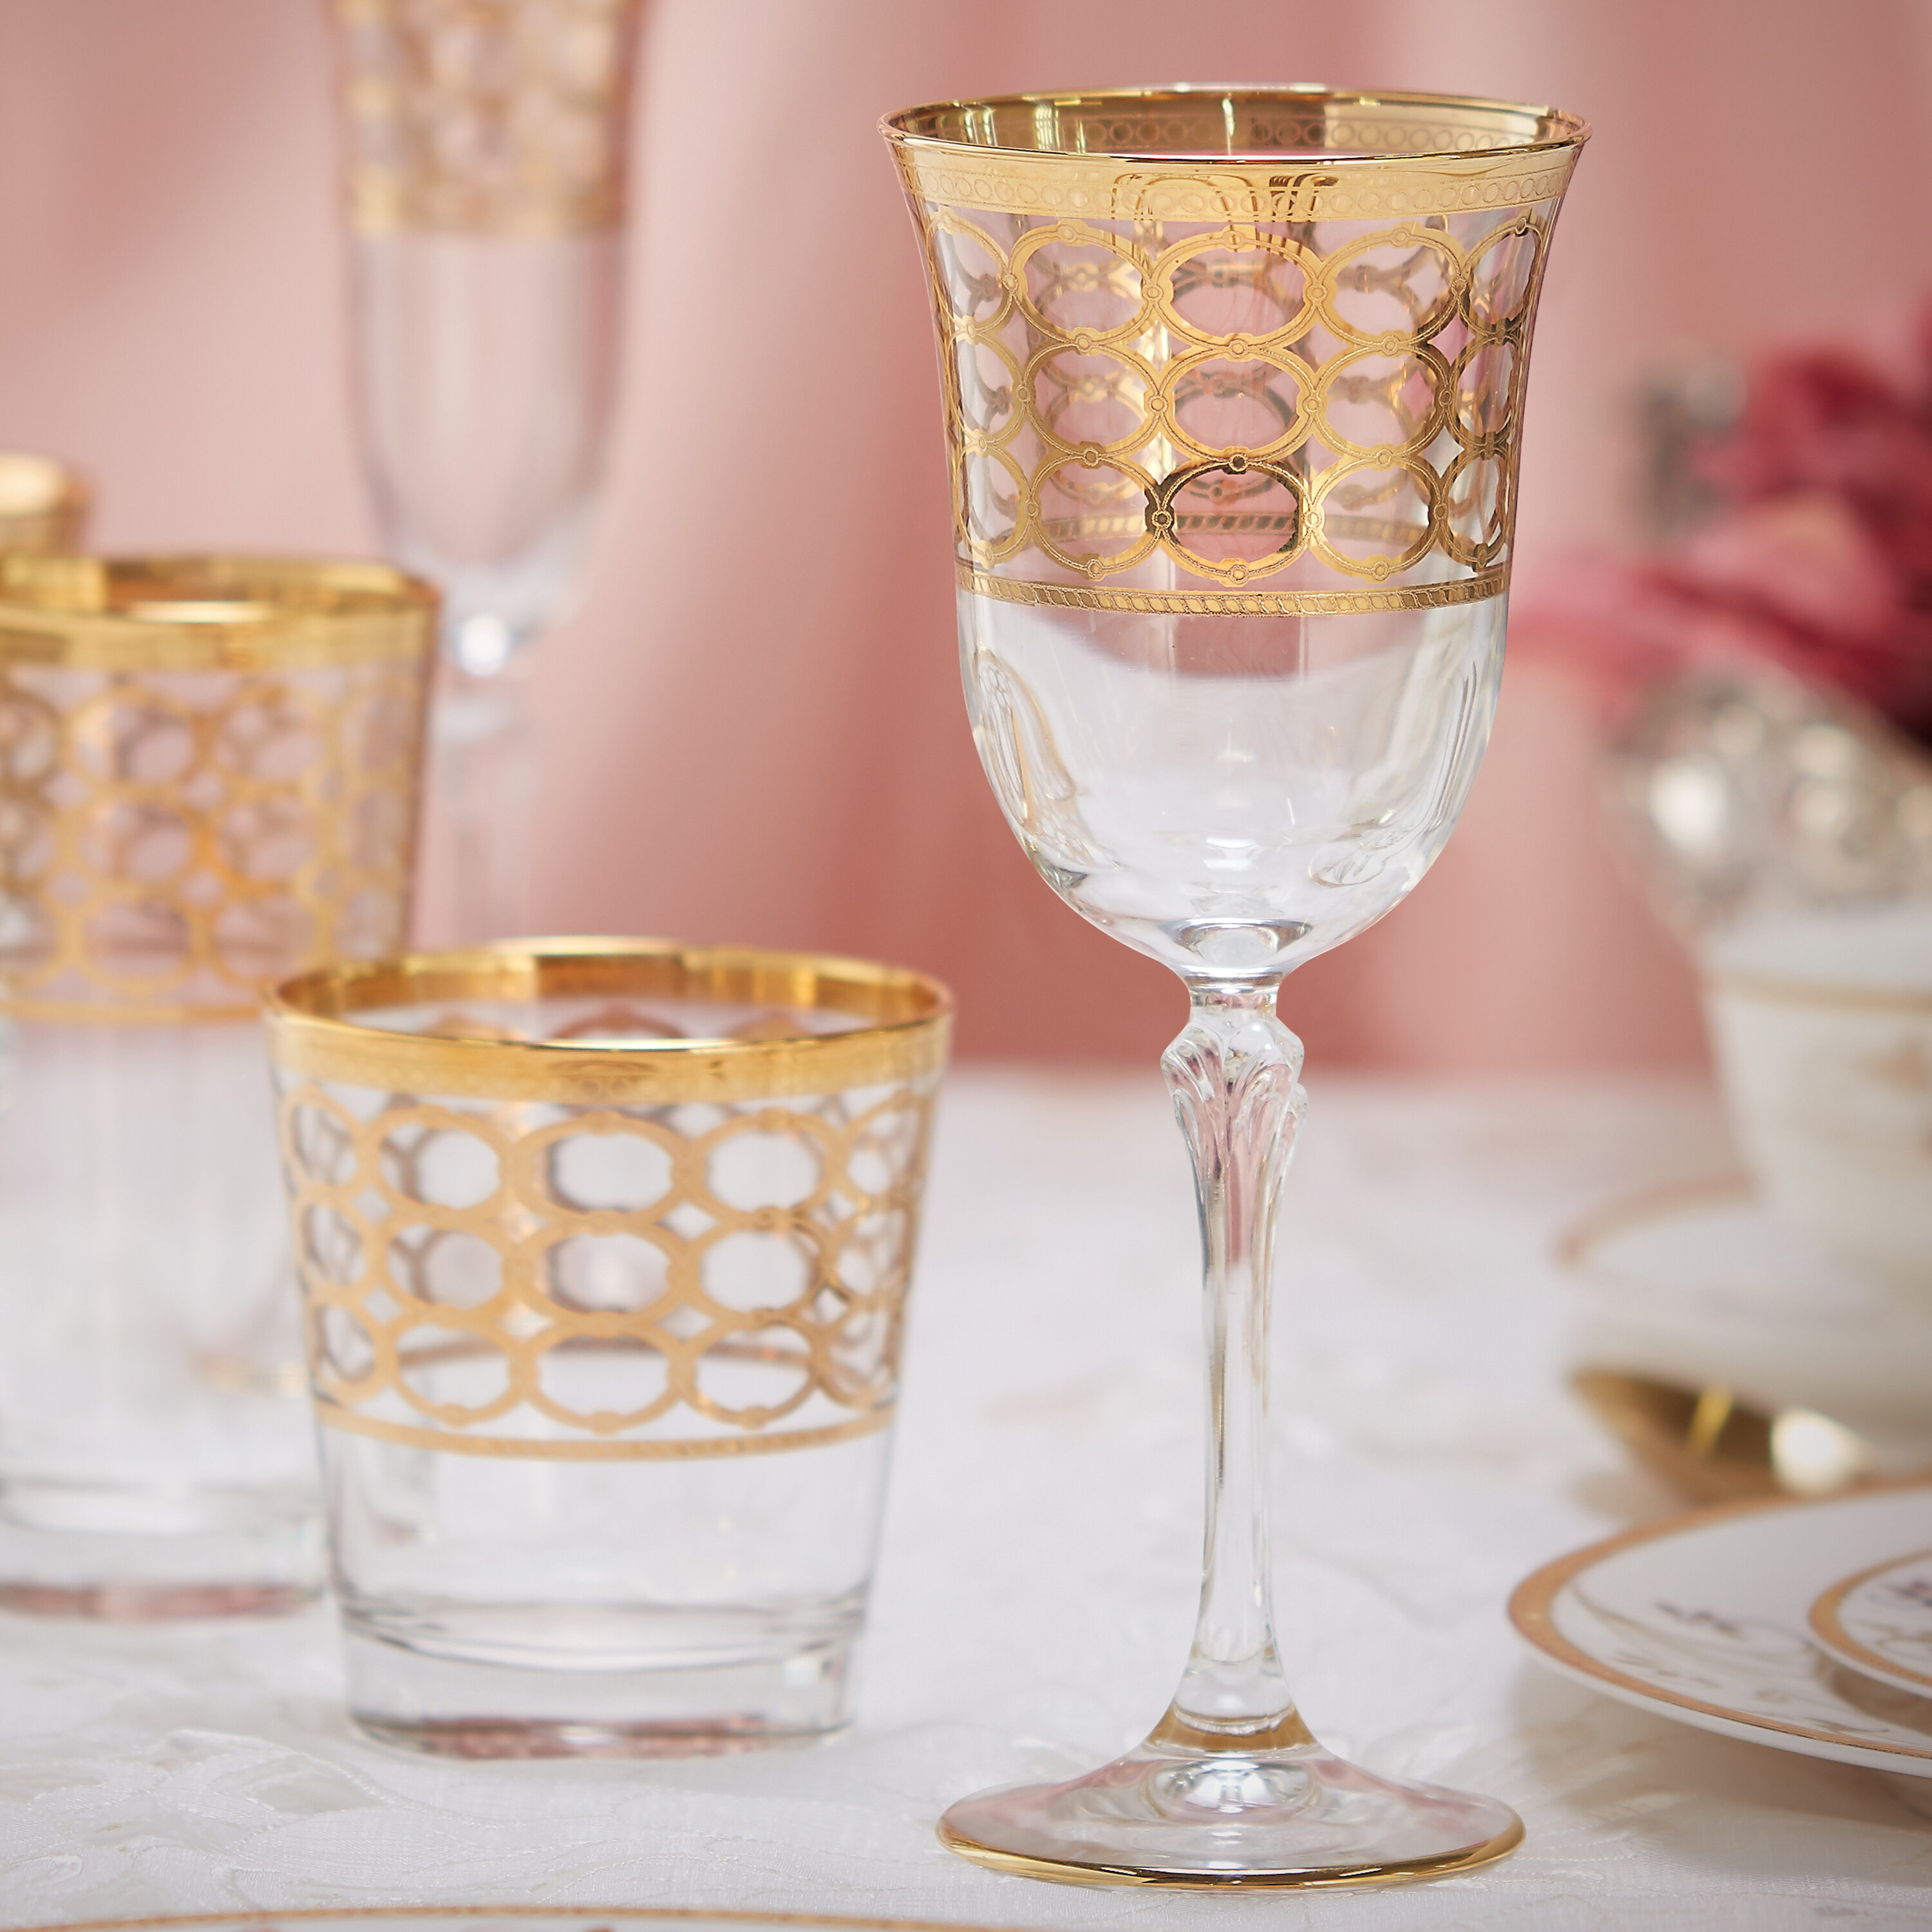 Gold-Rimmed Crystal Champagne Flutes by Viski, Set of 2 - Drinkware